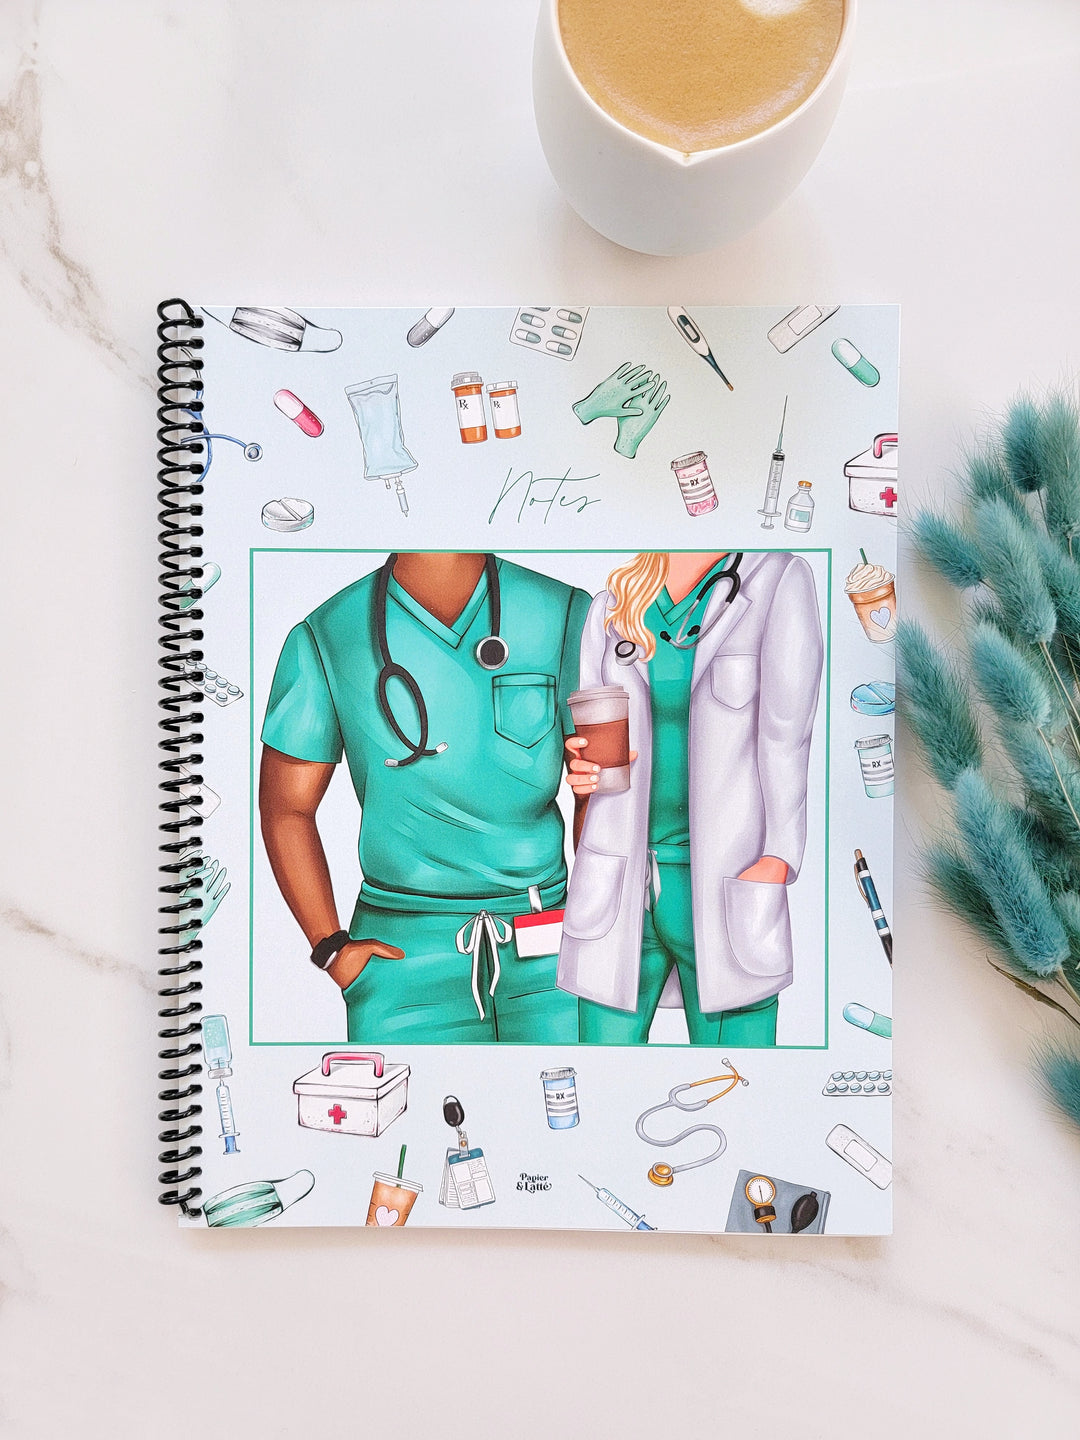 Professionnels de la santé - Cahier de notes / Notebook